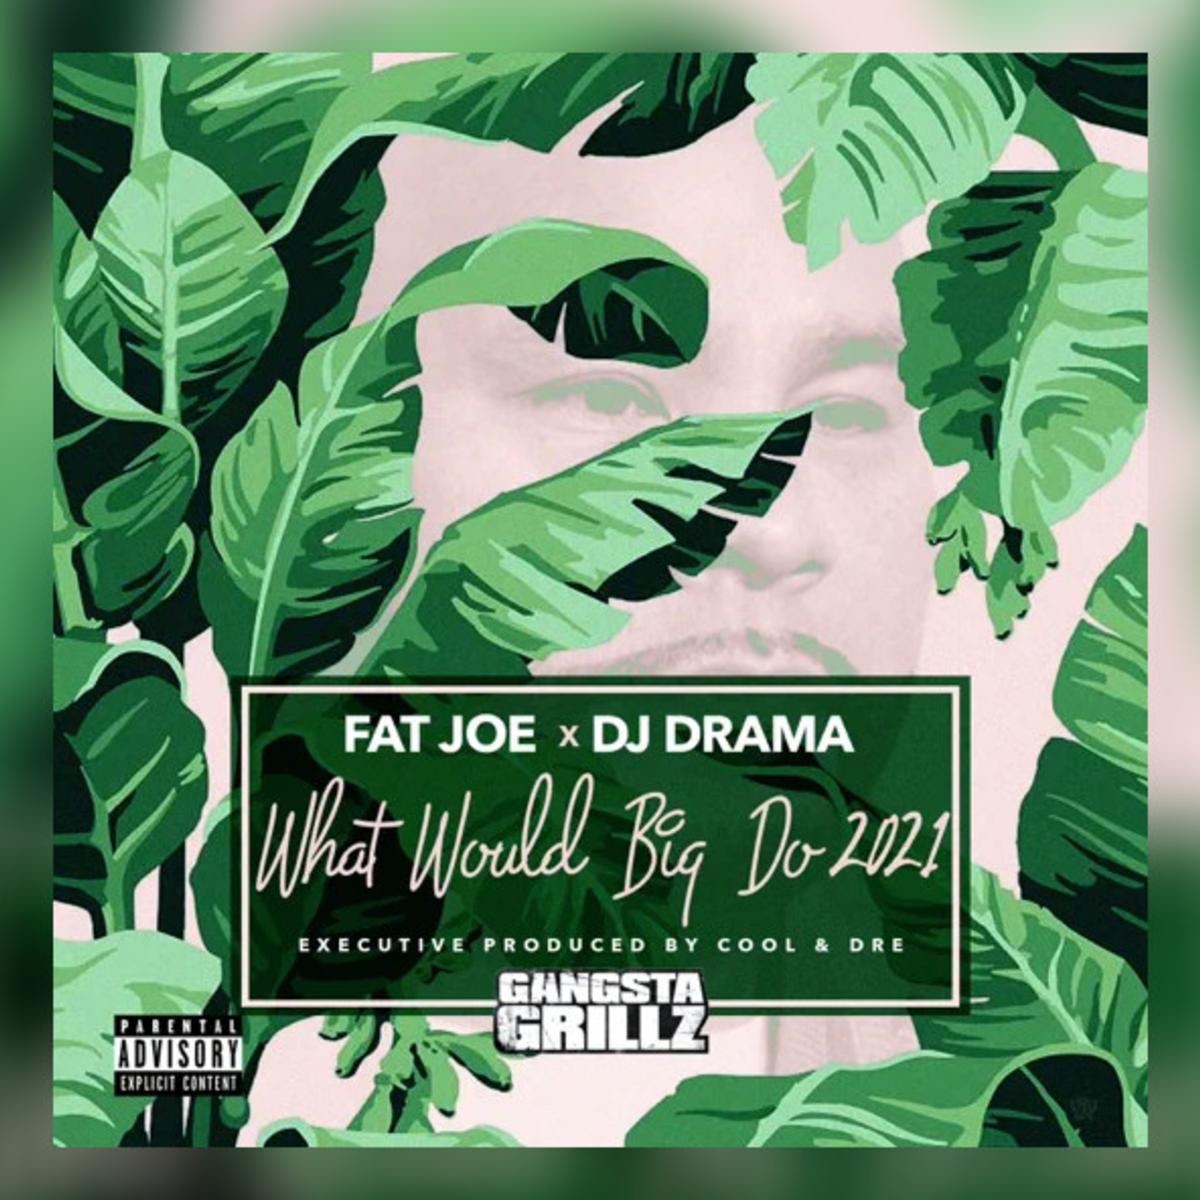 Fat Joe & DJ Drama – What Would Big Do 2021 (Album Review)